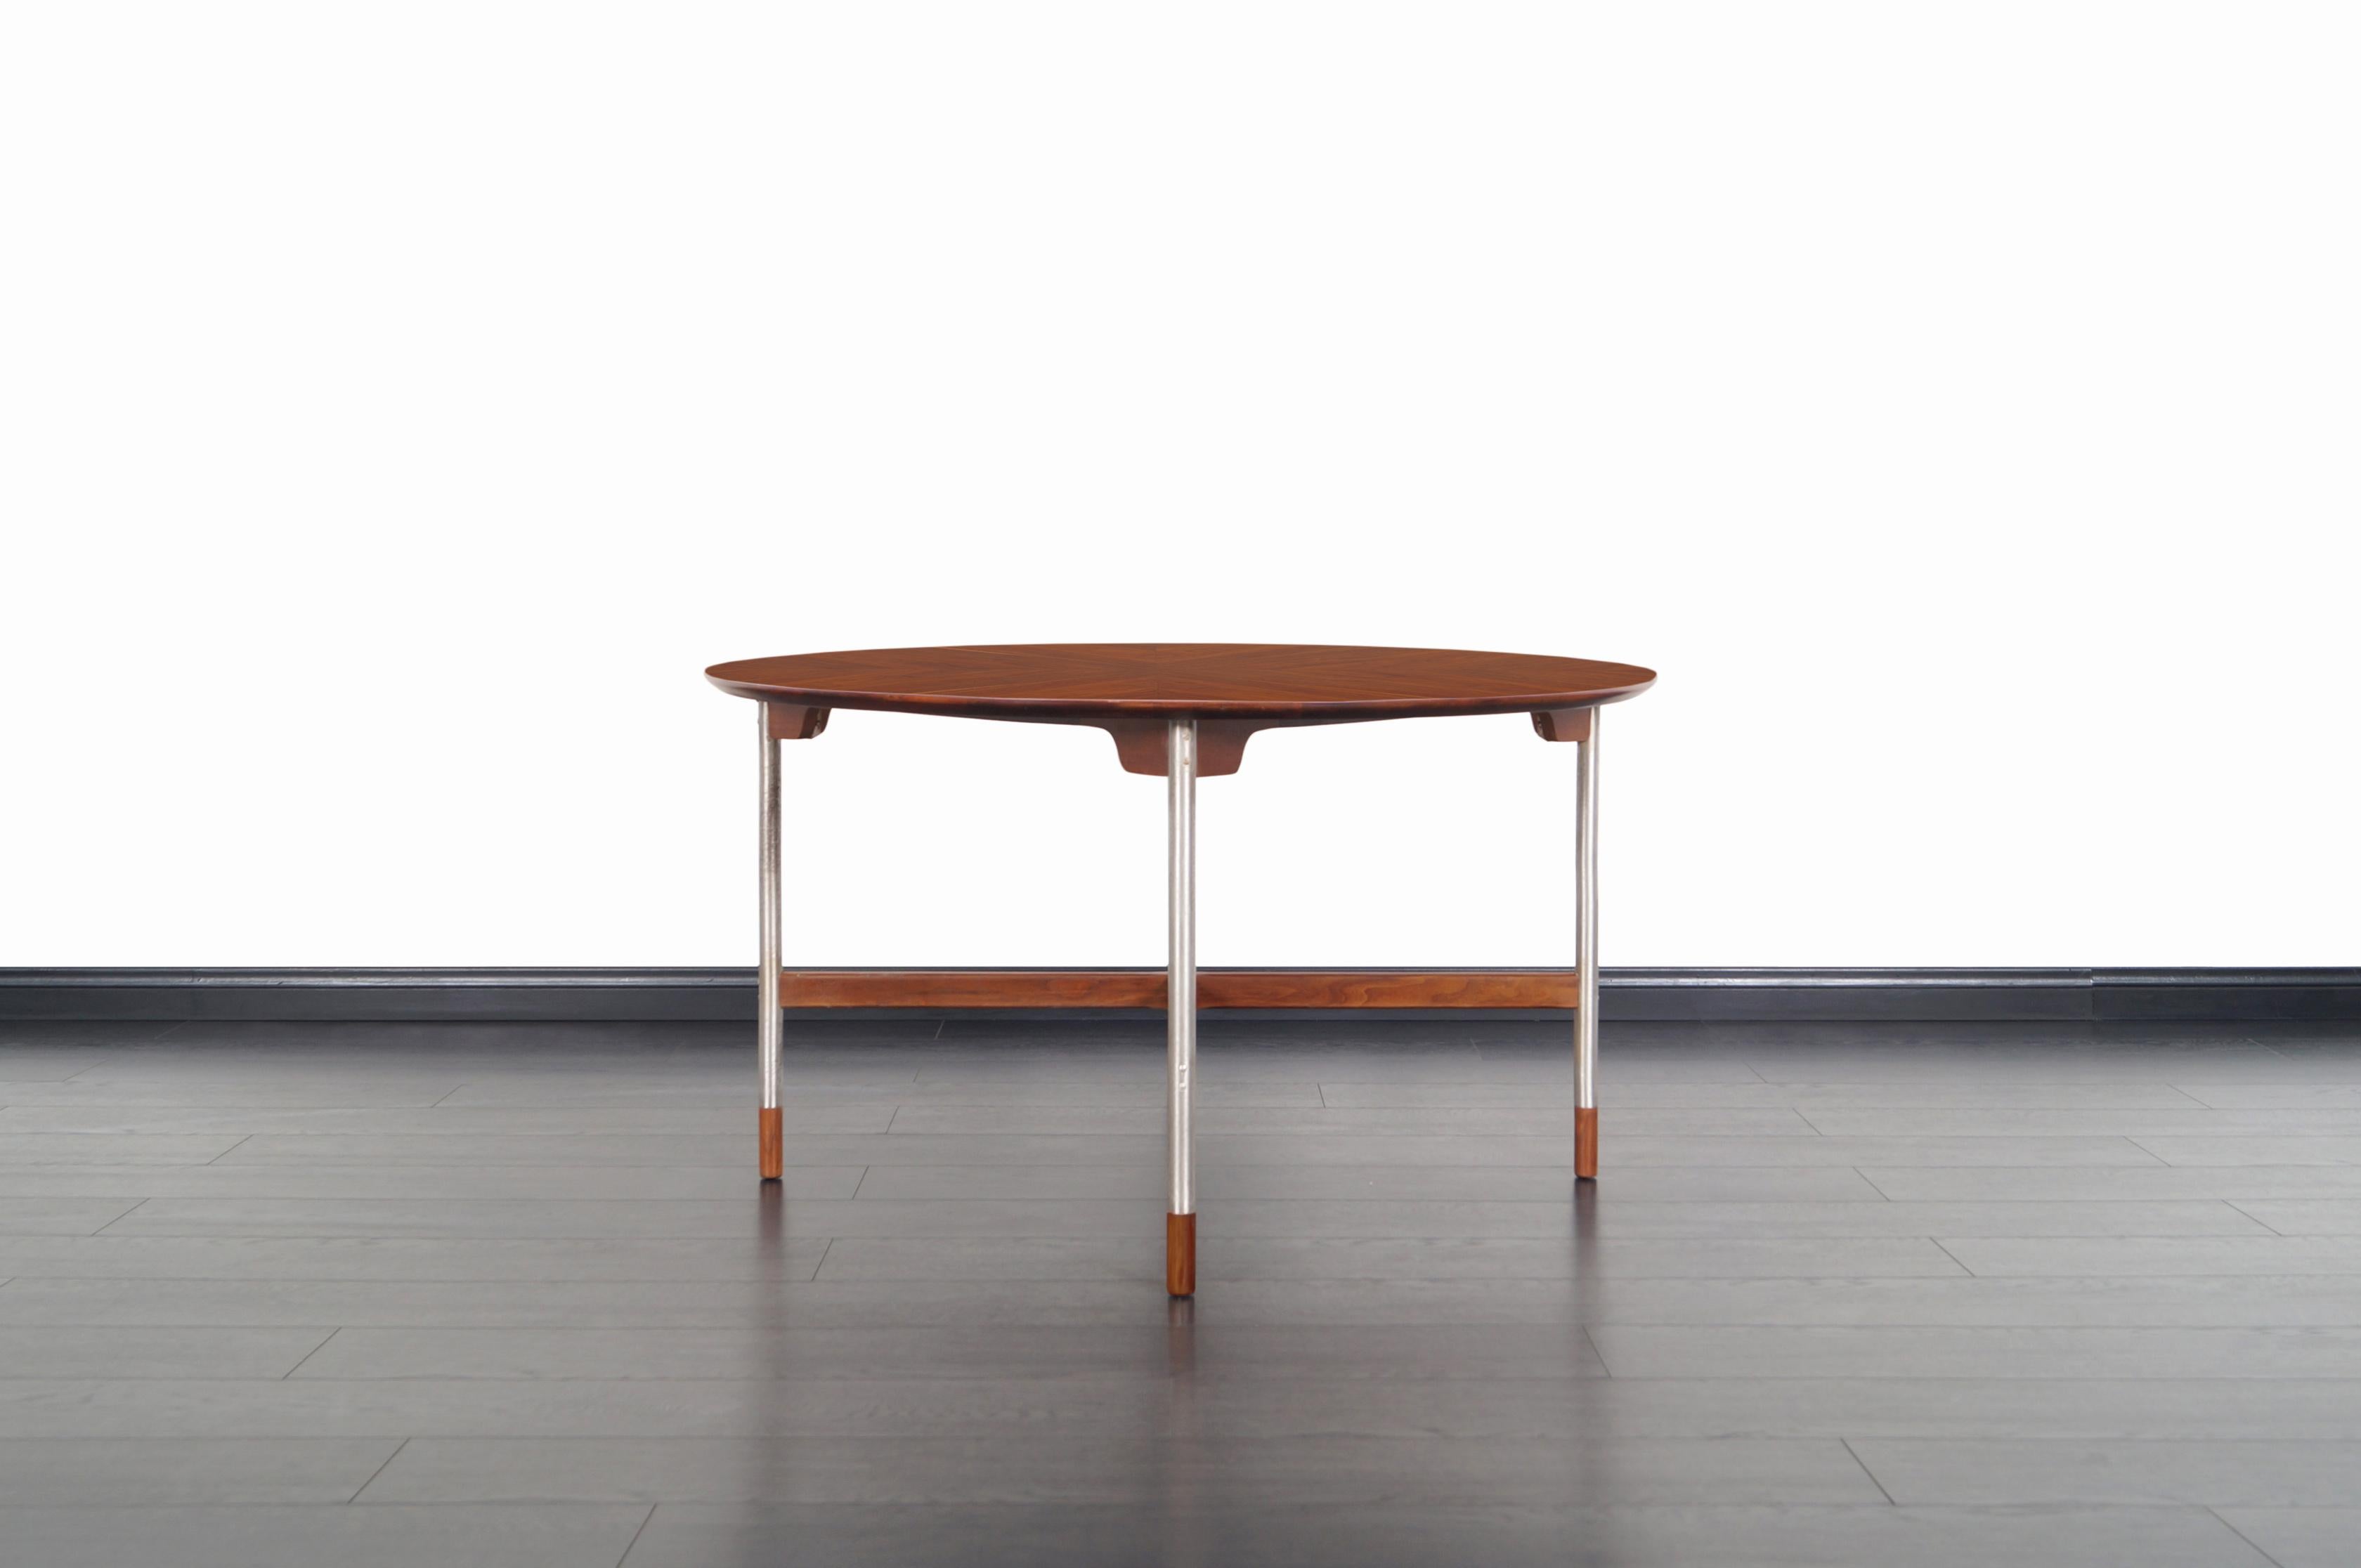 Erstaunlicher Mid-Century Modern Tisch von Jack Cartwright für Gründer in den Vereinigten Staaten, ca. 1960er Jahre. Mit einer Platte aus Walnussholz in Buchform, einer X-förmigen Streckung und gebürsteten Stahlbeinen mit Kappen aus massivem